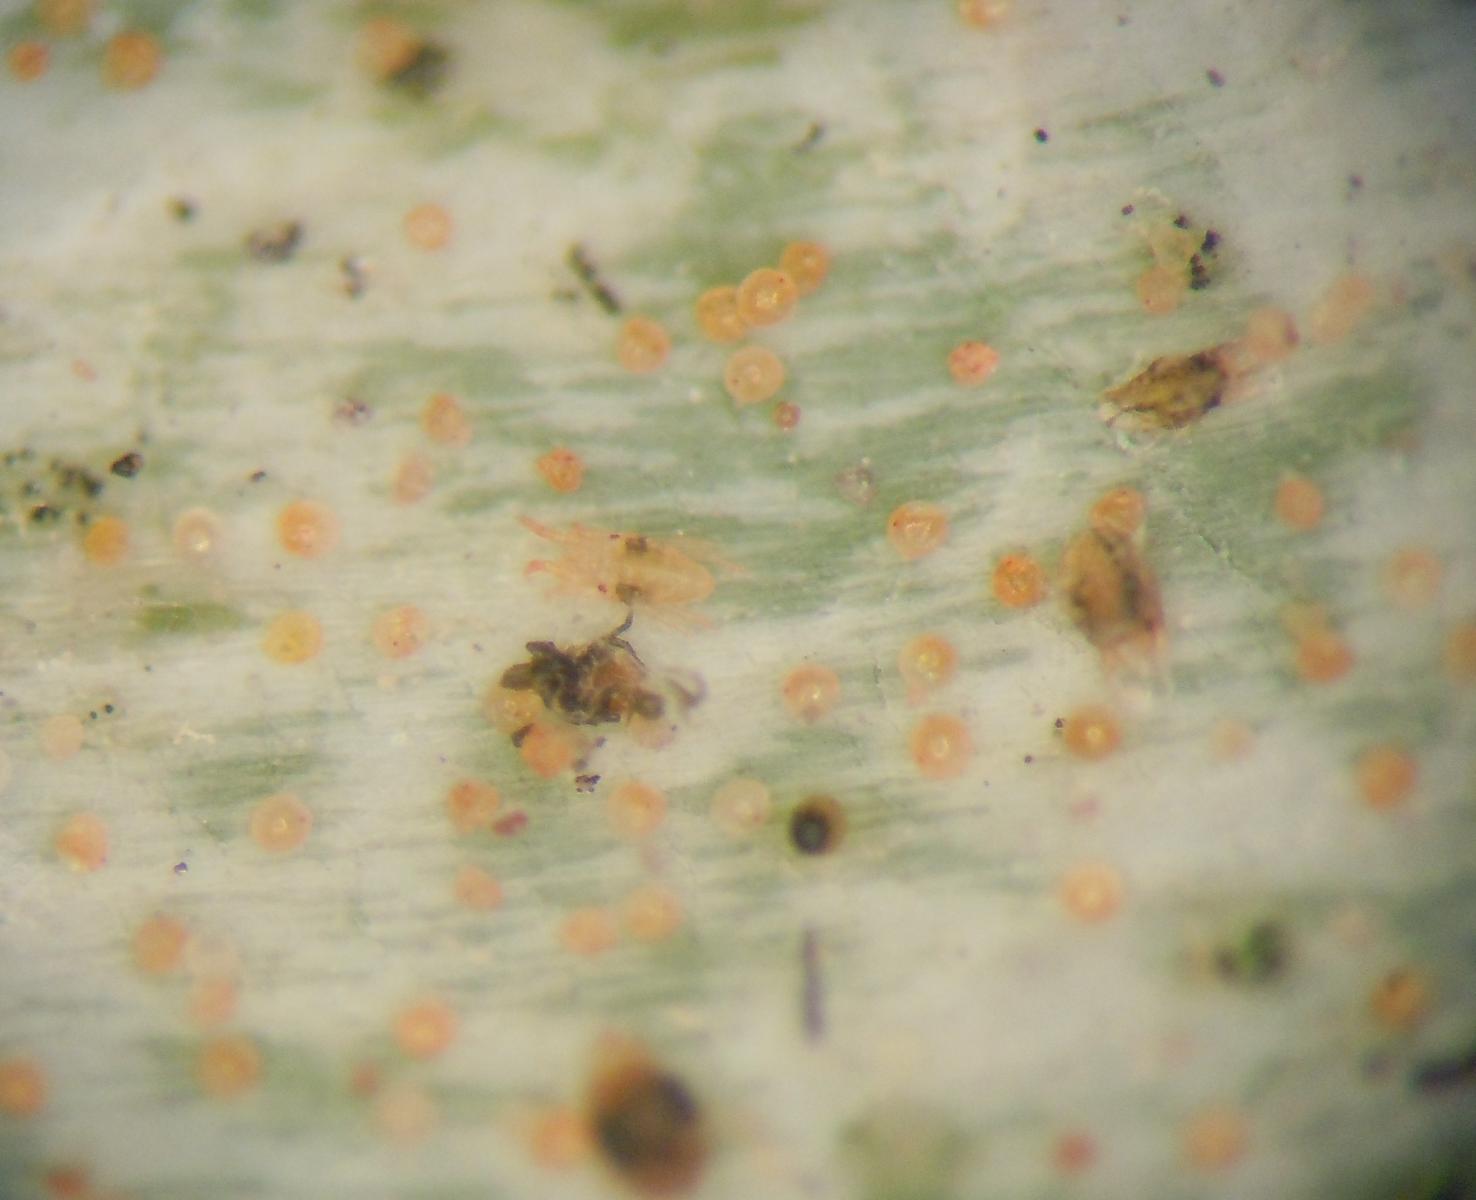 於解剖顯微鏡下檢查確定為葉蟎為害